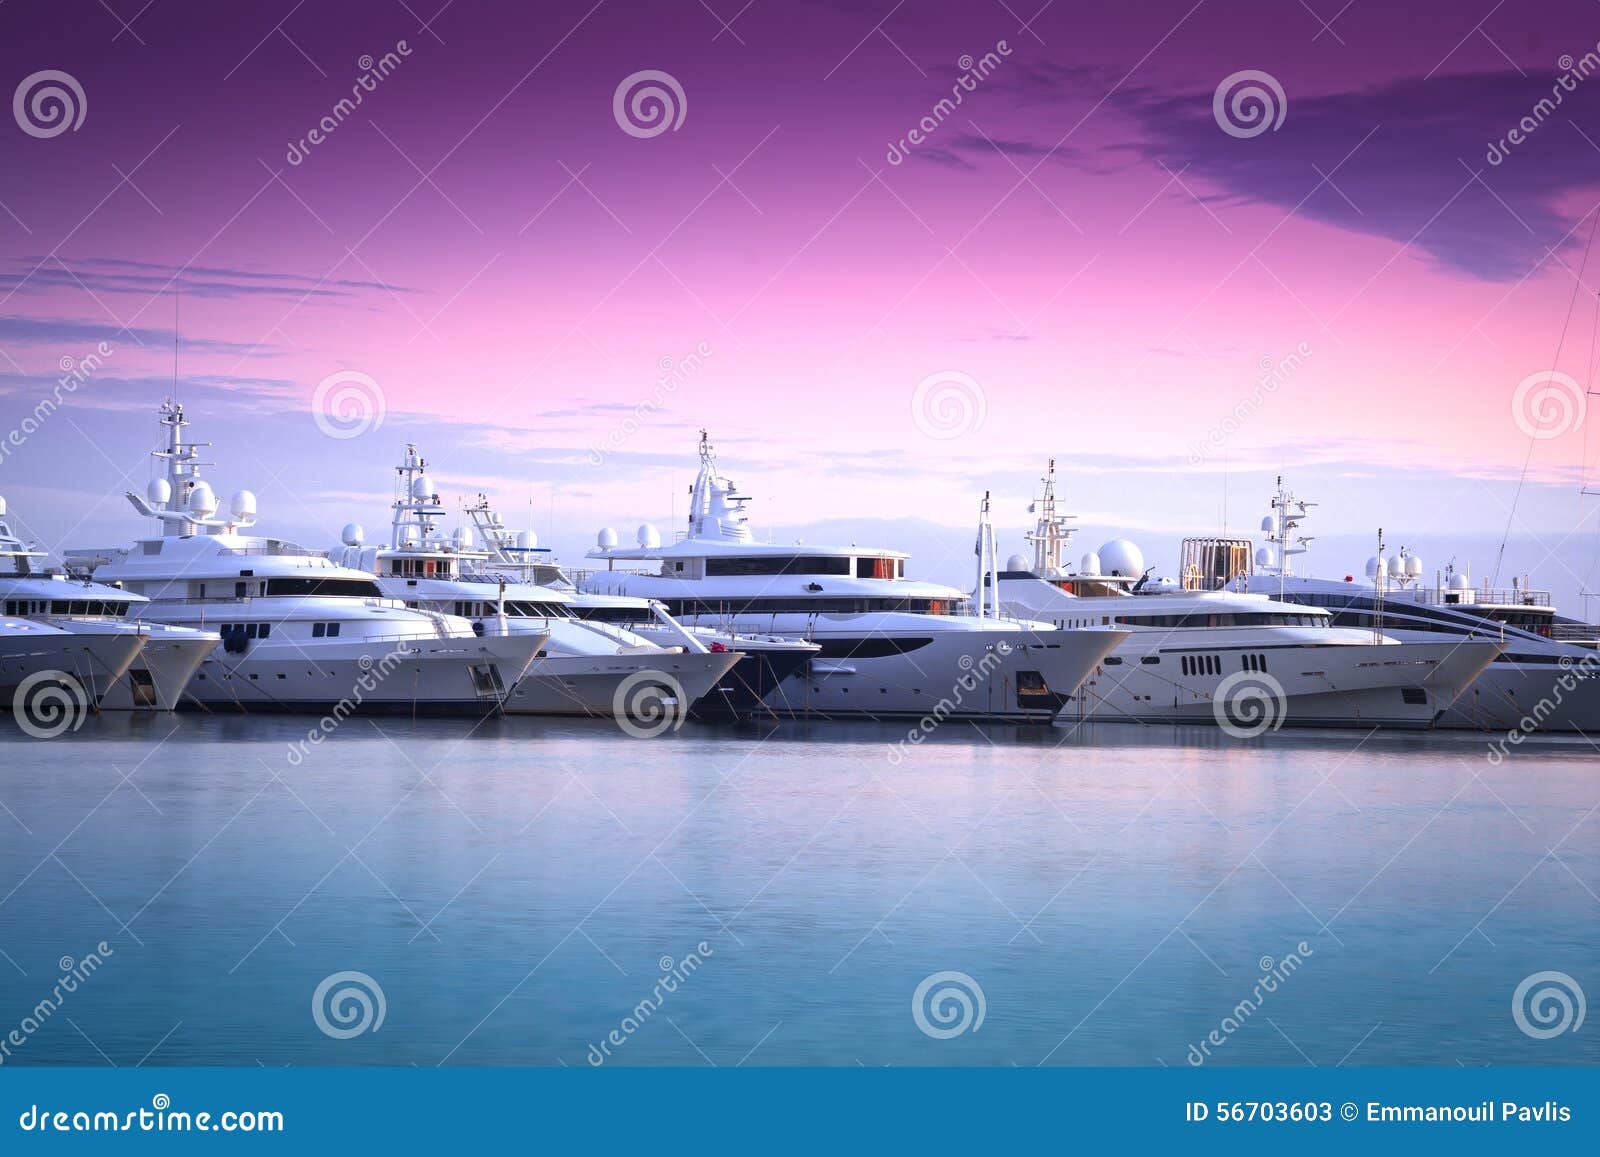 luxury yacht in marina